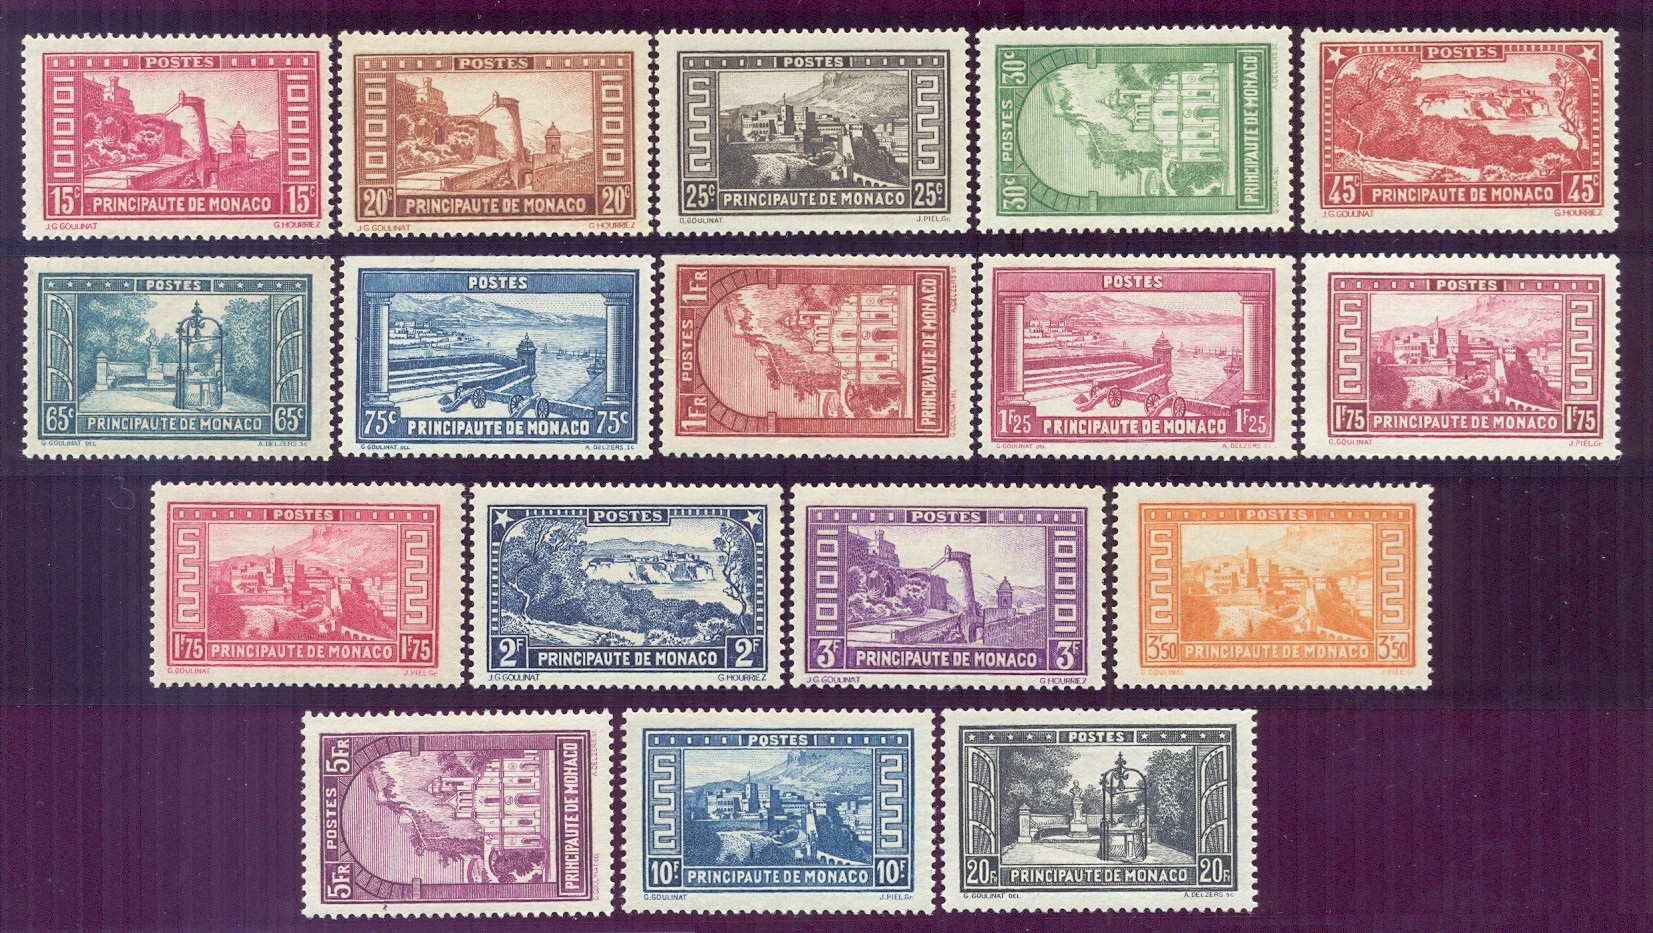 Vedute diverse - serie completa di 17 francobolli, nuovi e perfetti, con certificato di garanzia.